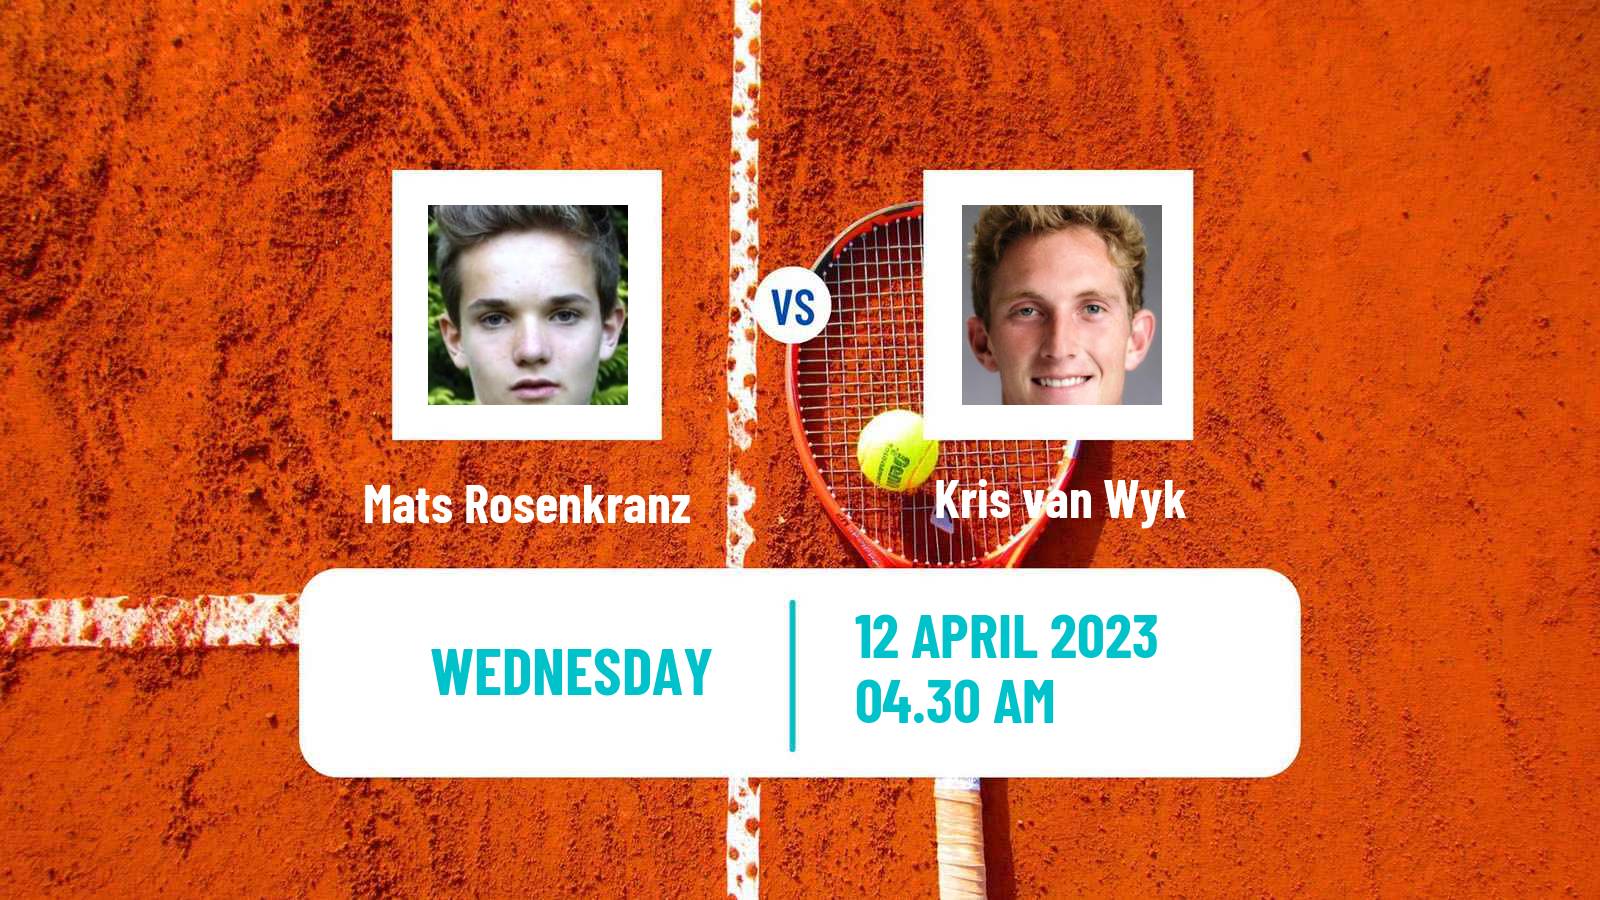 Tennis ITF Tournaments Mats Rosenkranz - Kris van Wyk